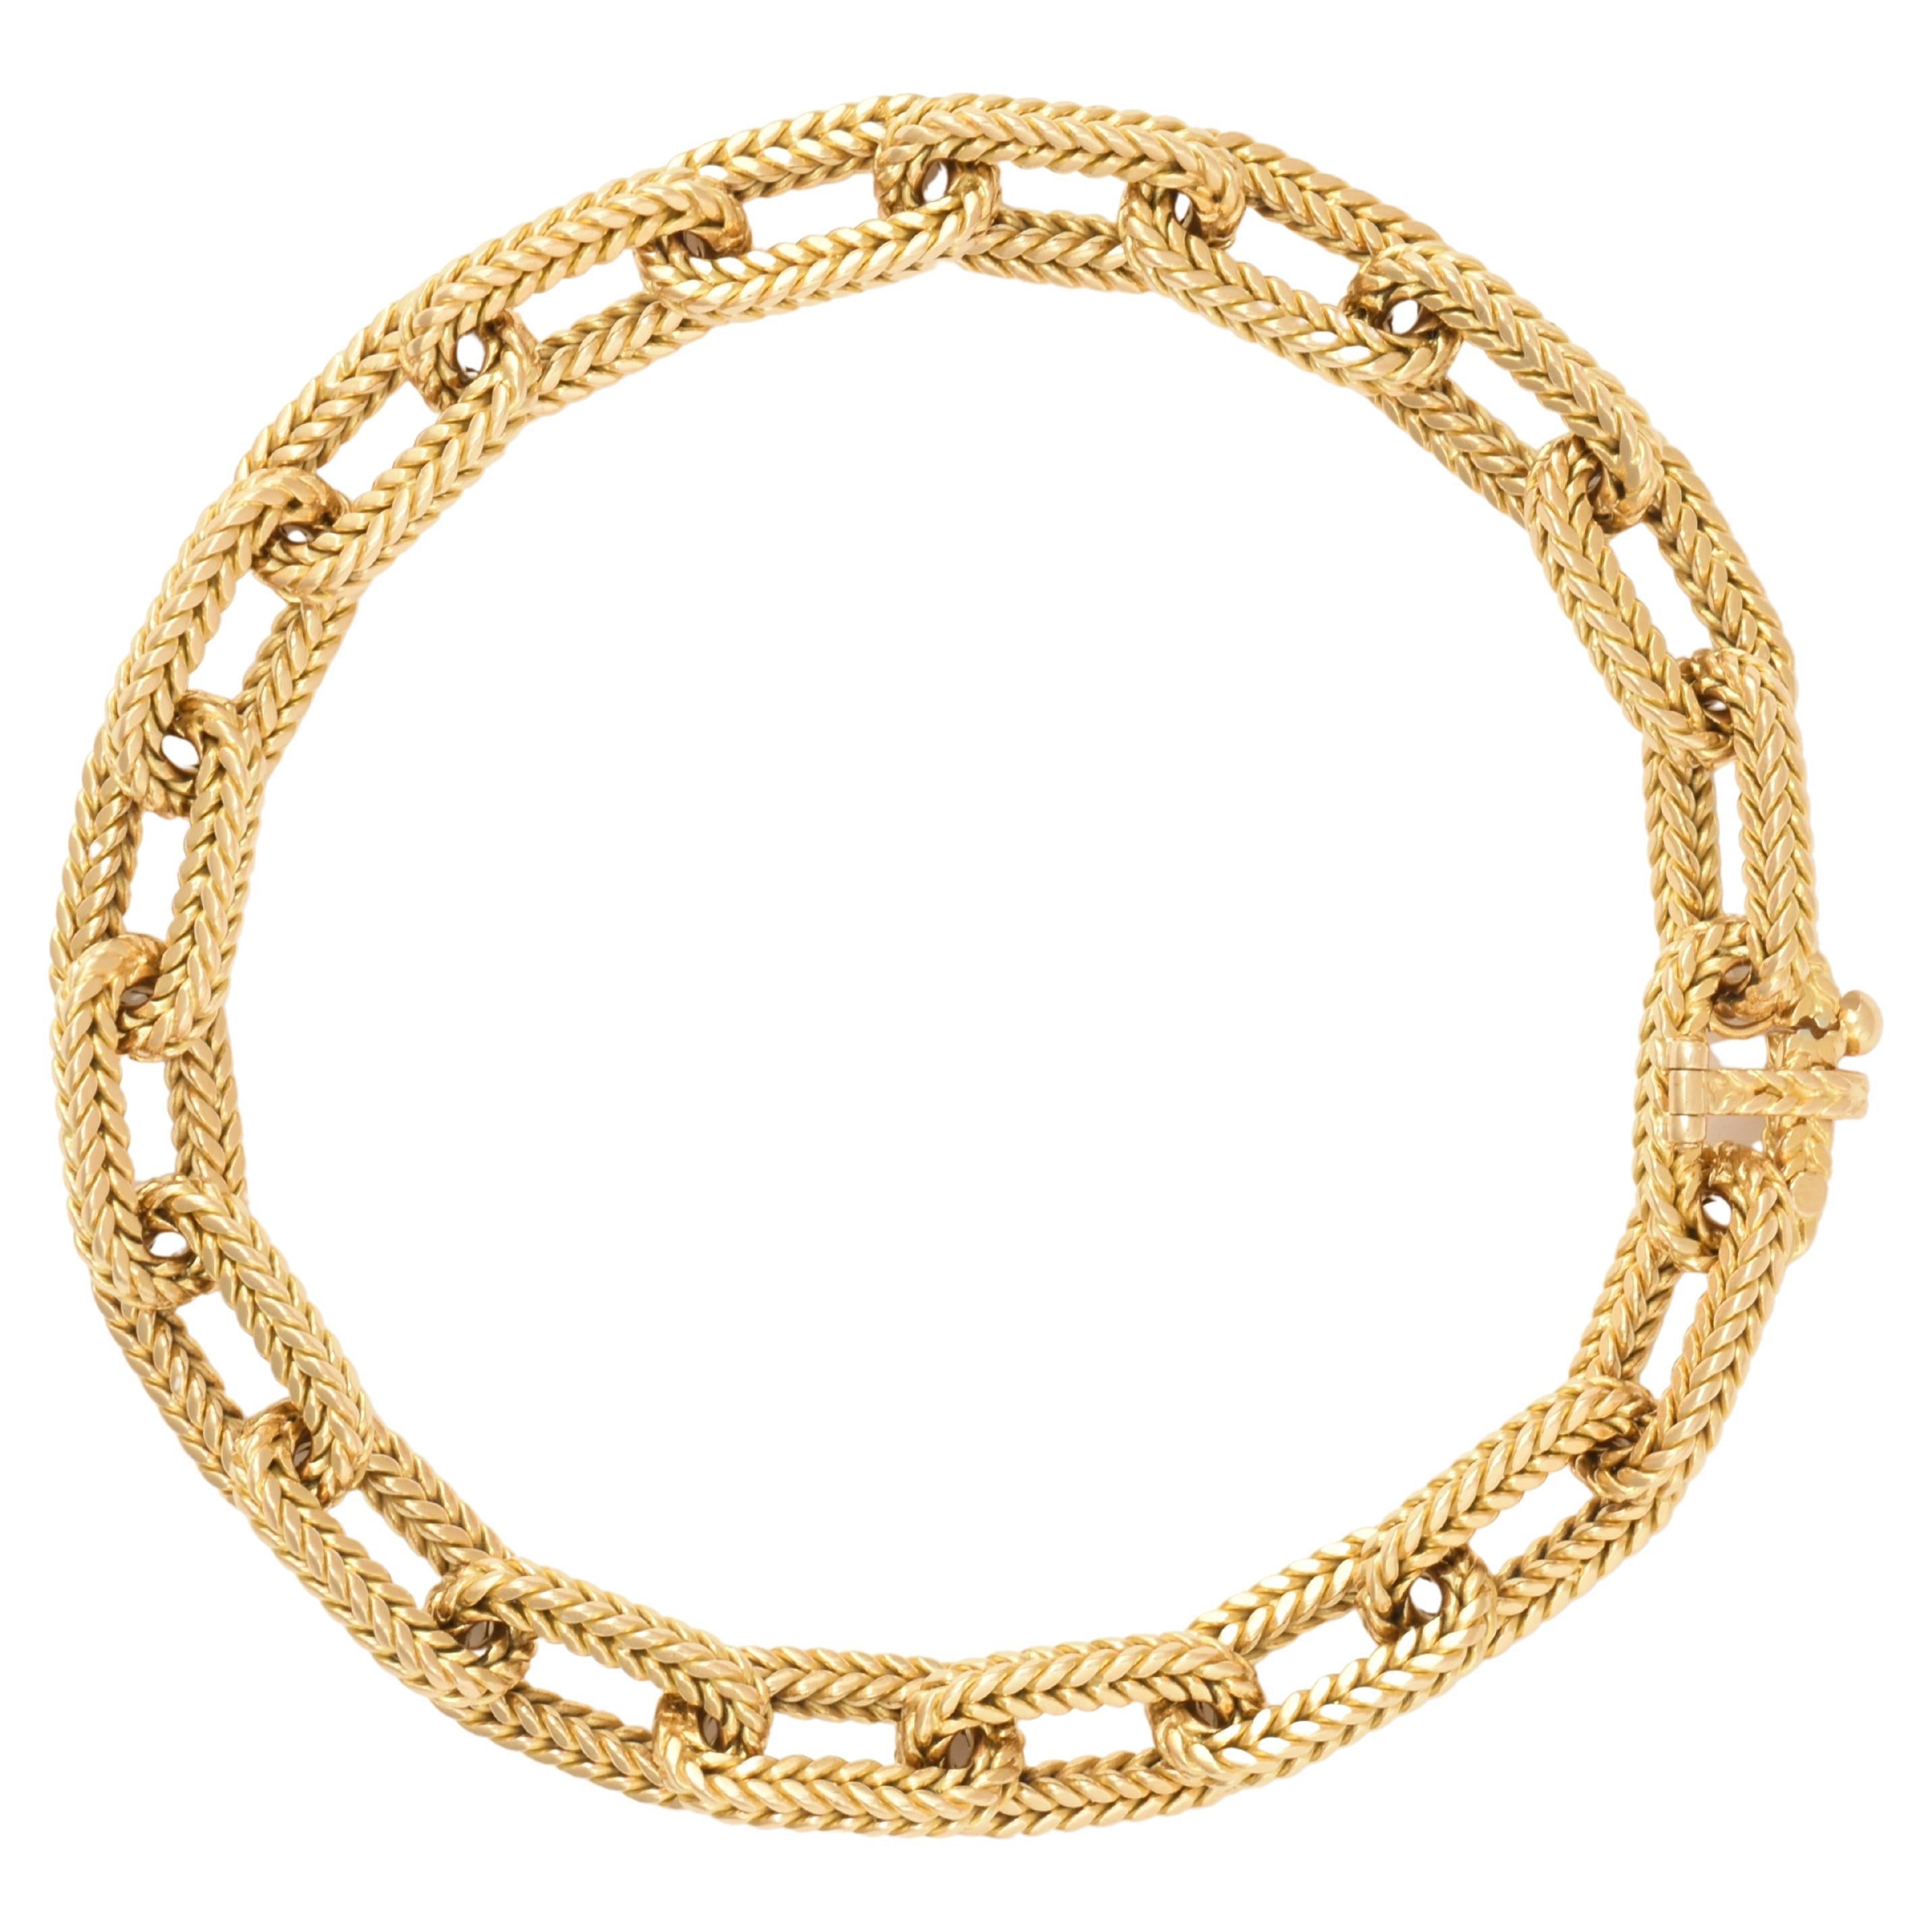 Vintage Georges L'enfant For O.J Perrin, 18k Braided Gold Link Bracelet